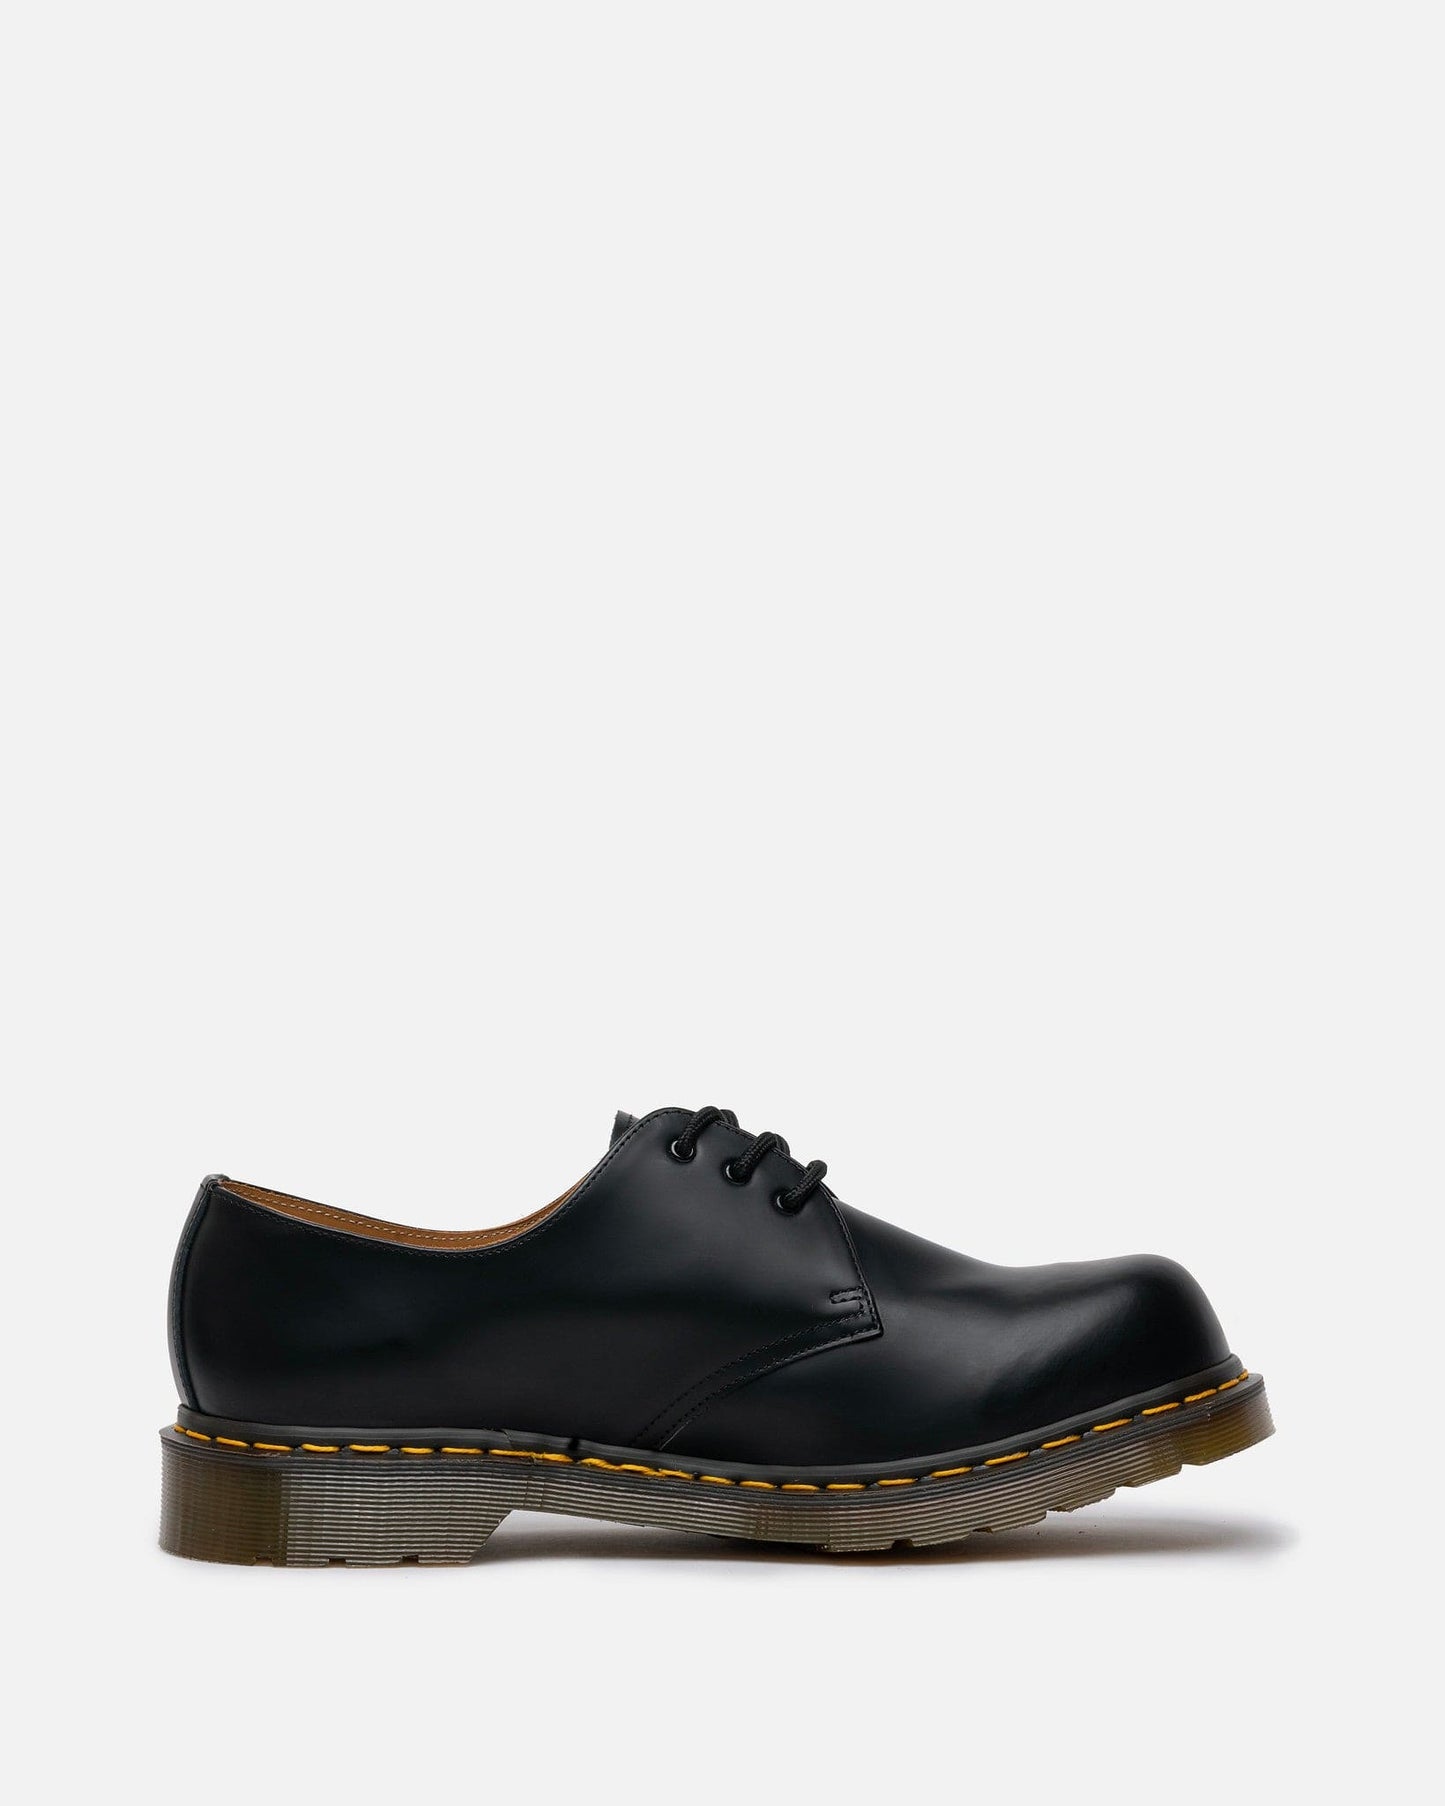 Comme des Garcons Homme Deux Men's Shoes Dr. Martens 1460 Leather Round Toe in Black